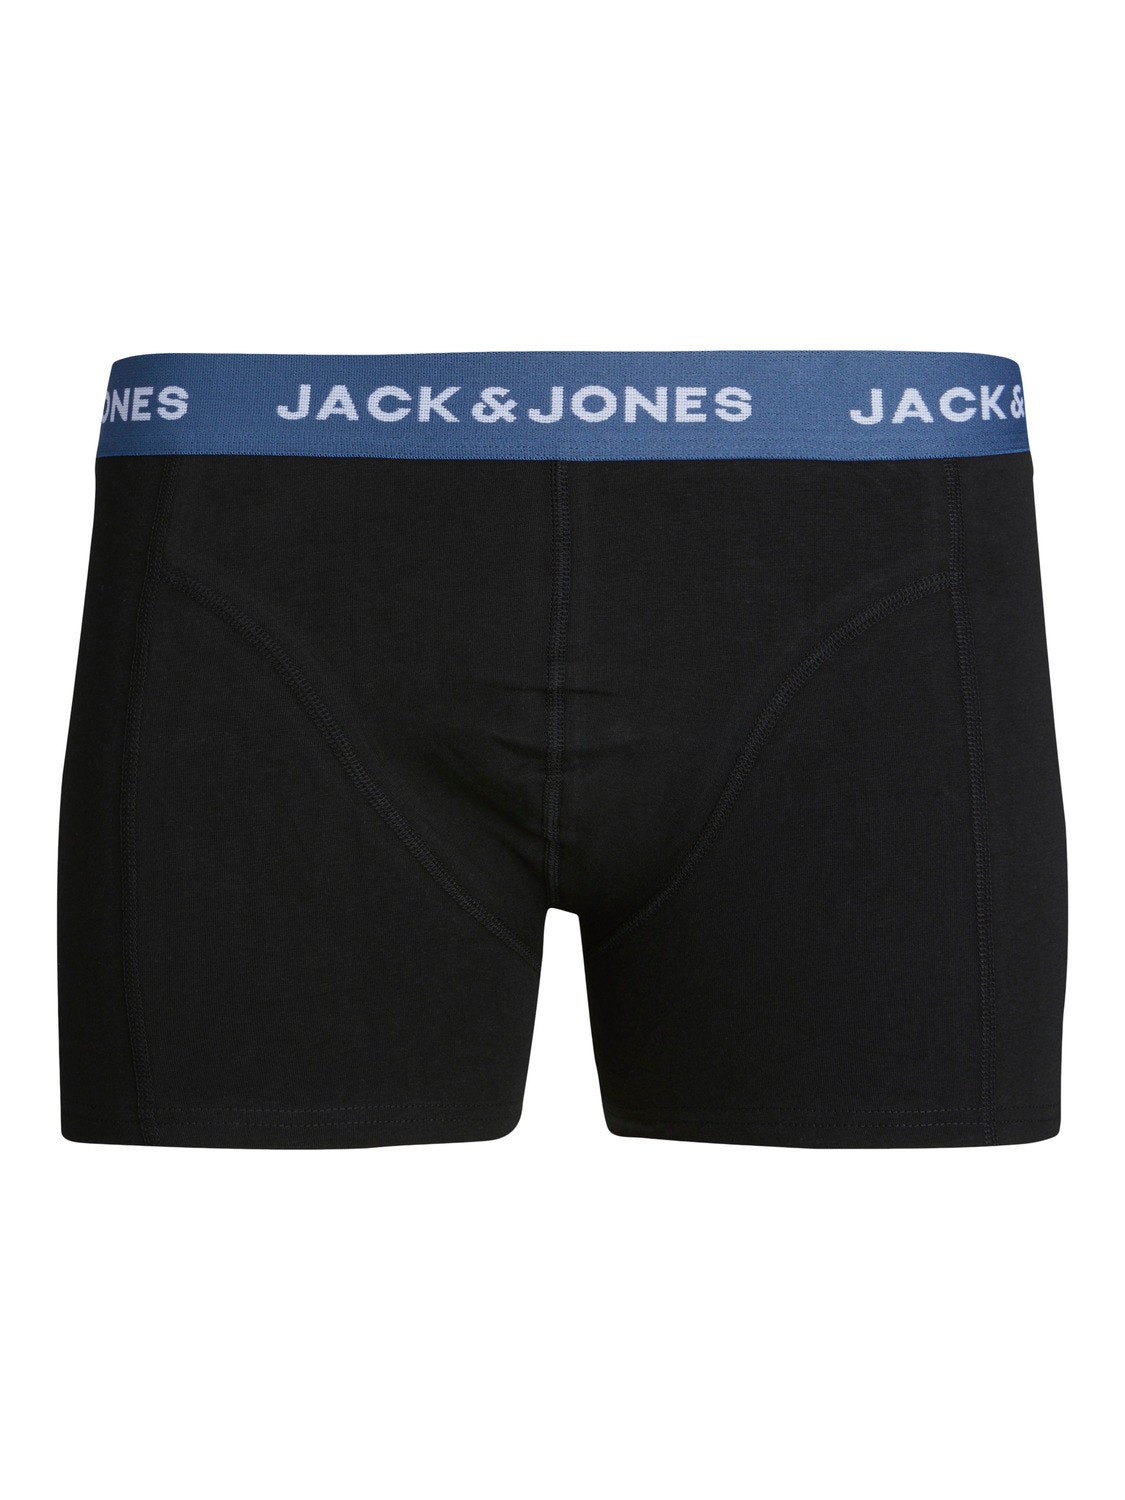 Jack & Jones 3-pack Trunks -Dark Green - 12250203